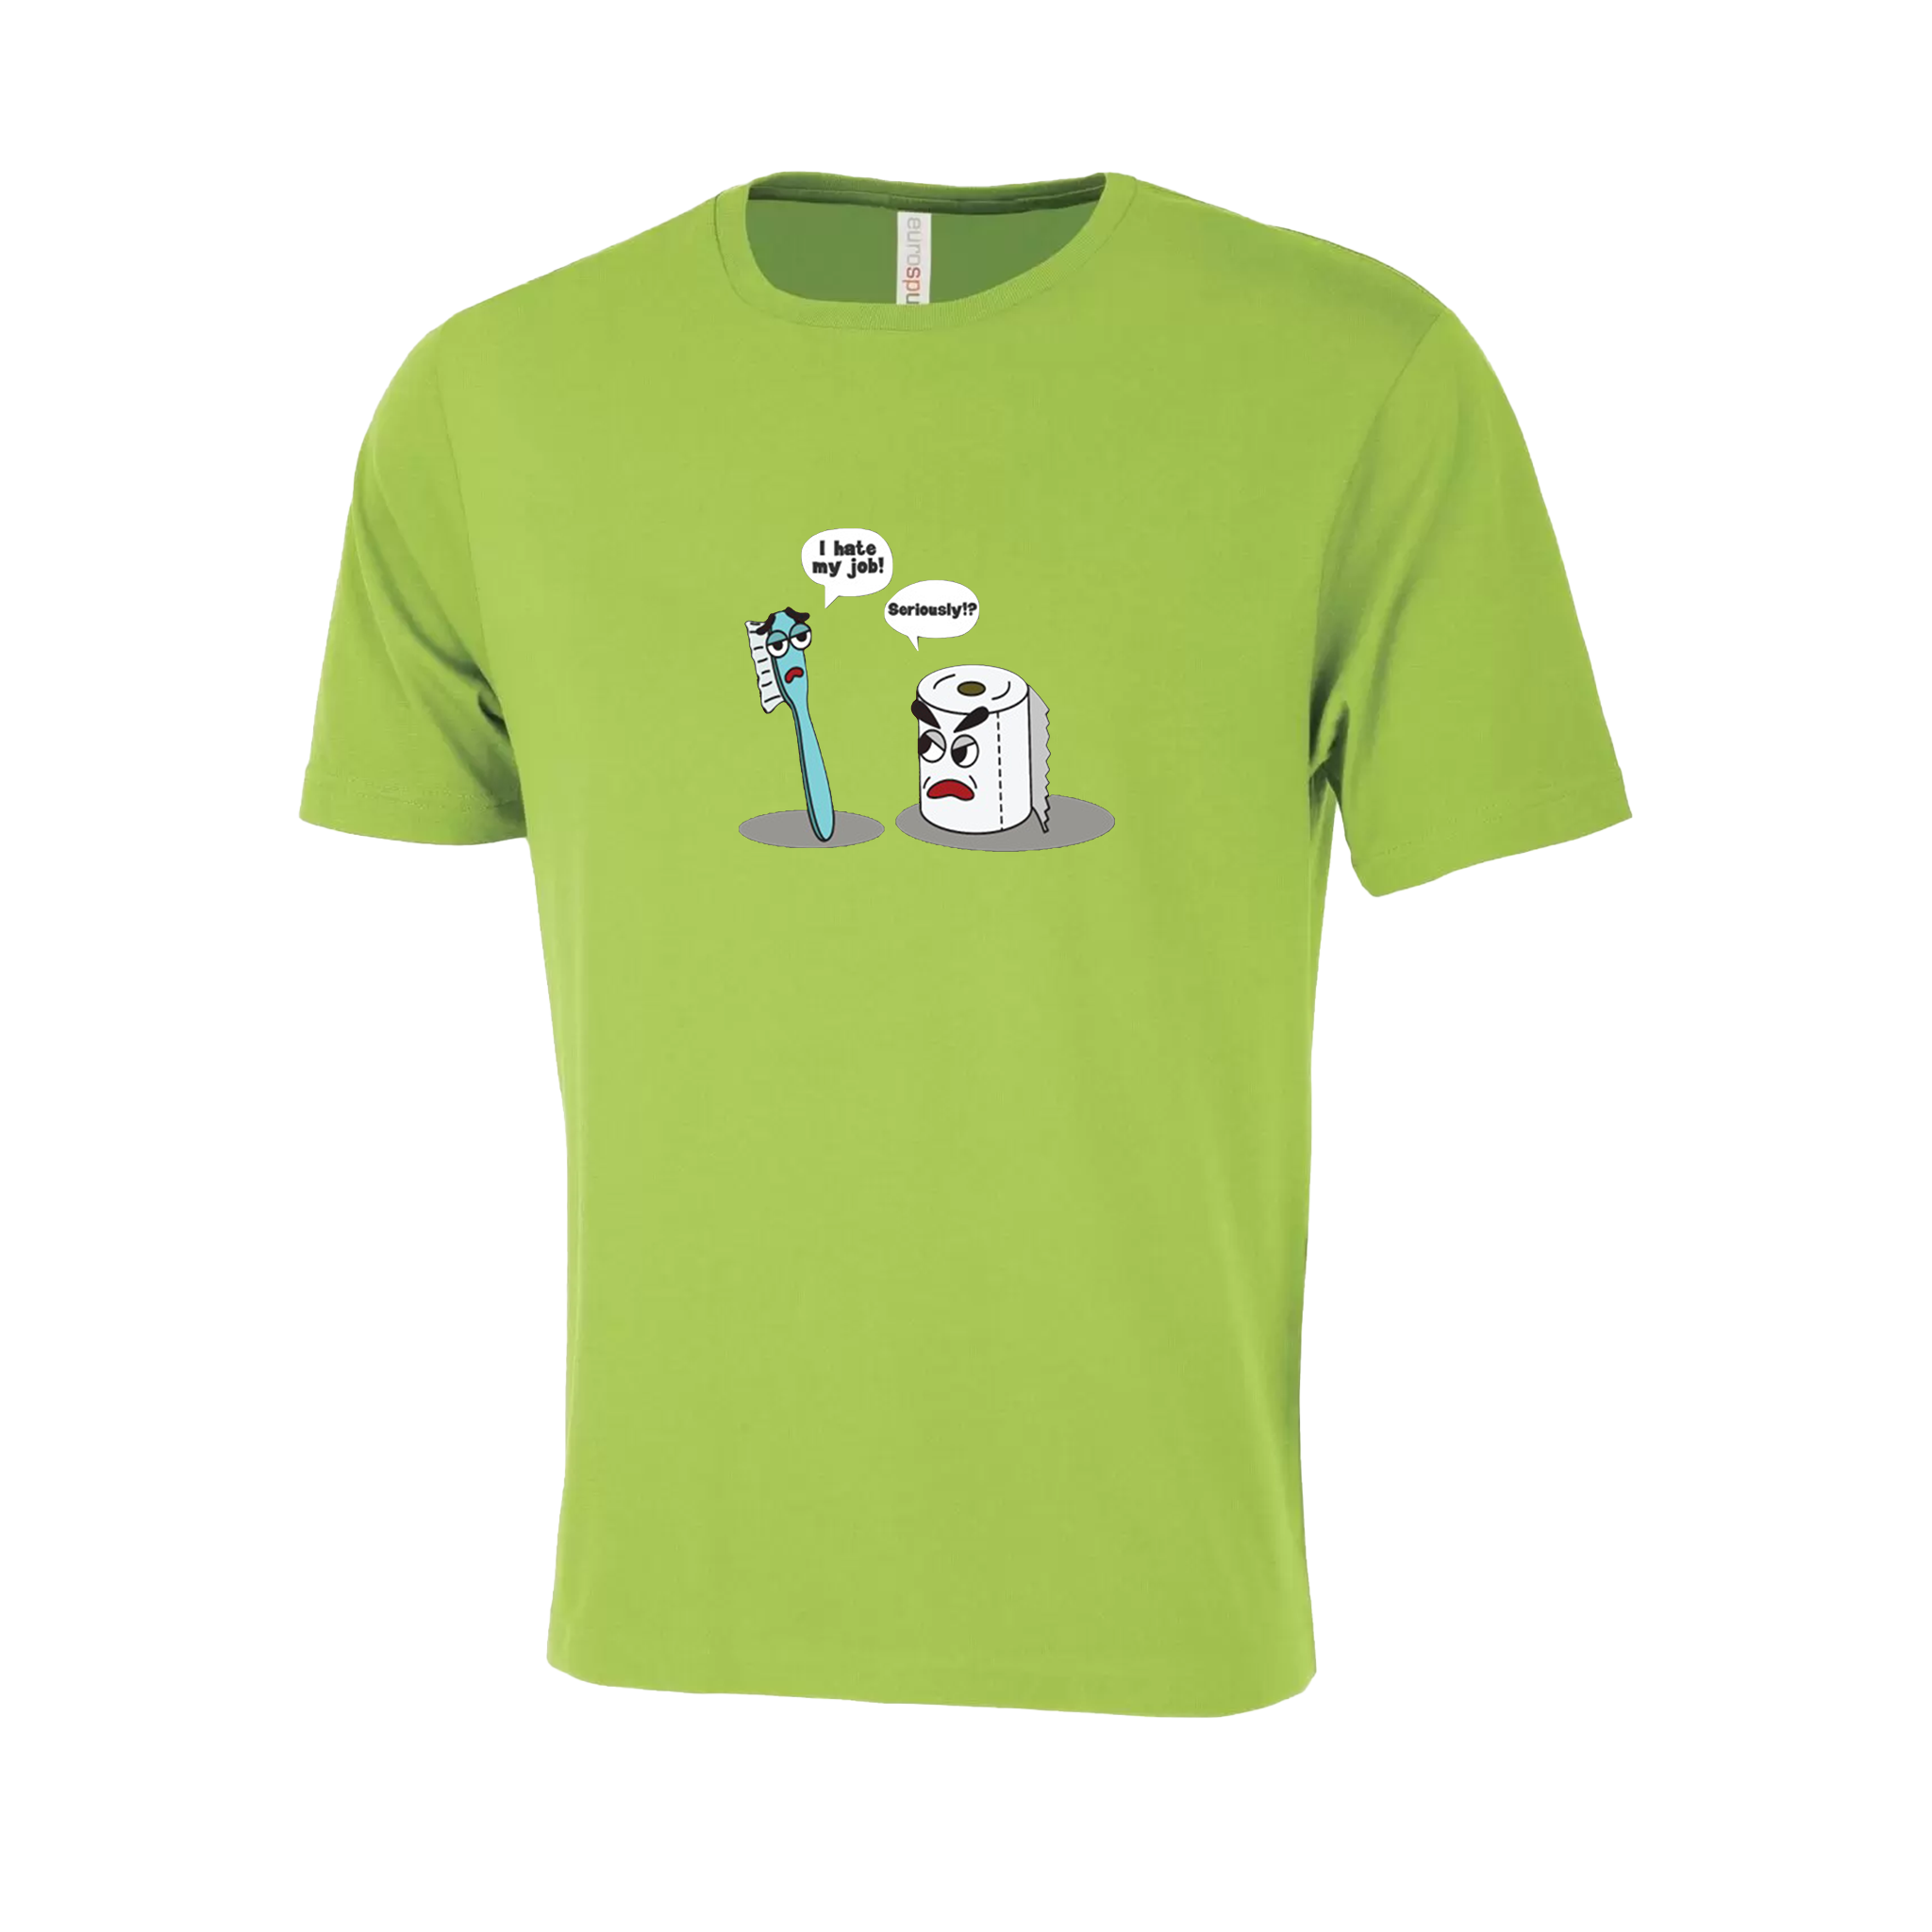 Toilet Humor Novelty T-Shirt - Adult Unisex Sizing XS-4XL - Kiwi